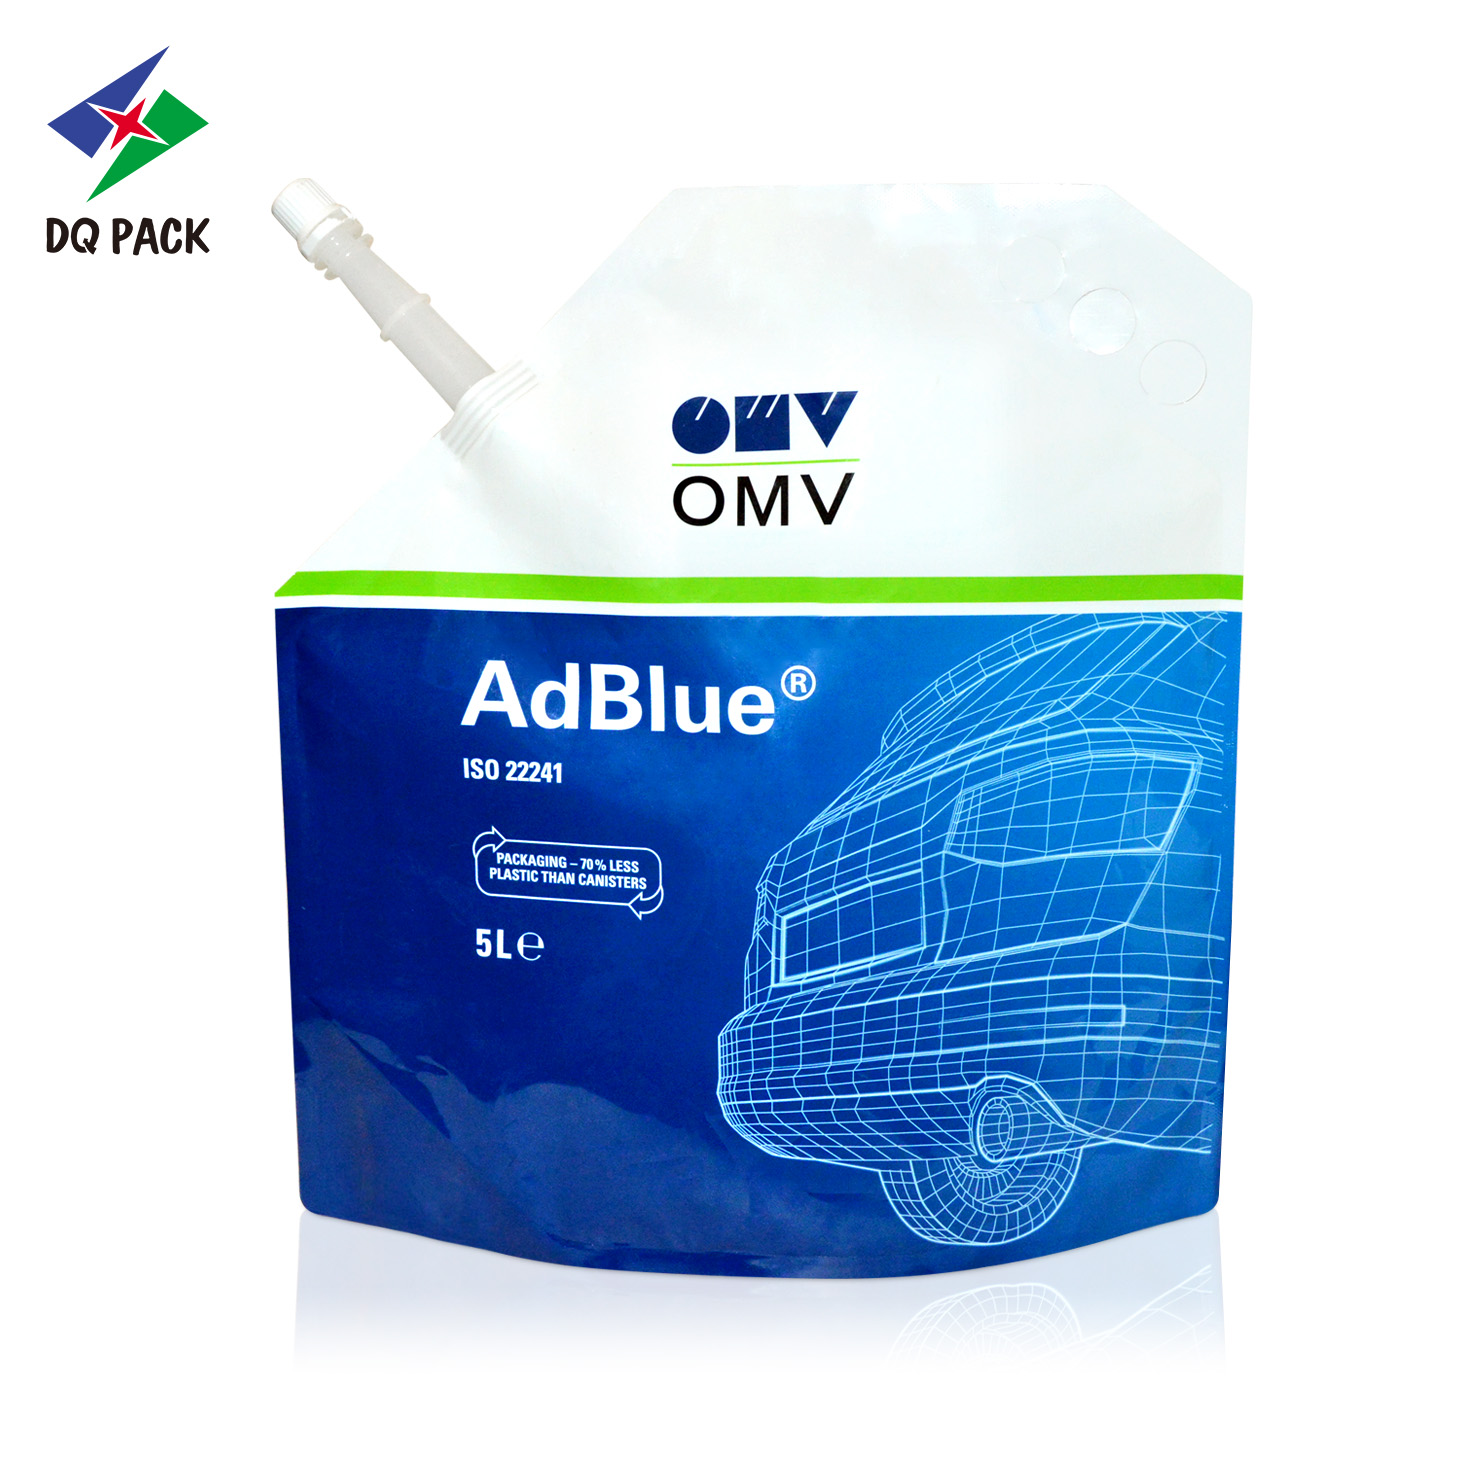 DQ PACK 5L staansak met spesiale sport vir Adblue Liquid Packaging Sak Plastiek Doypack